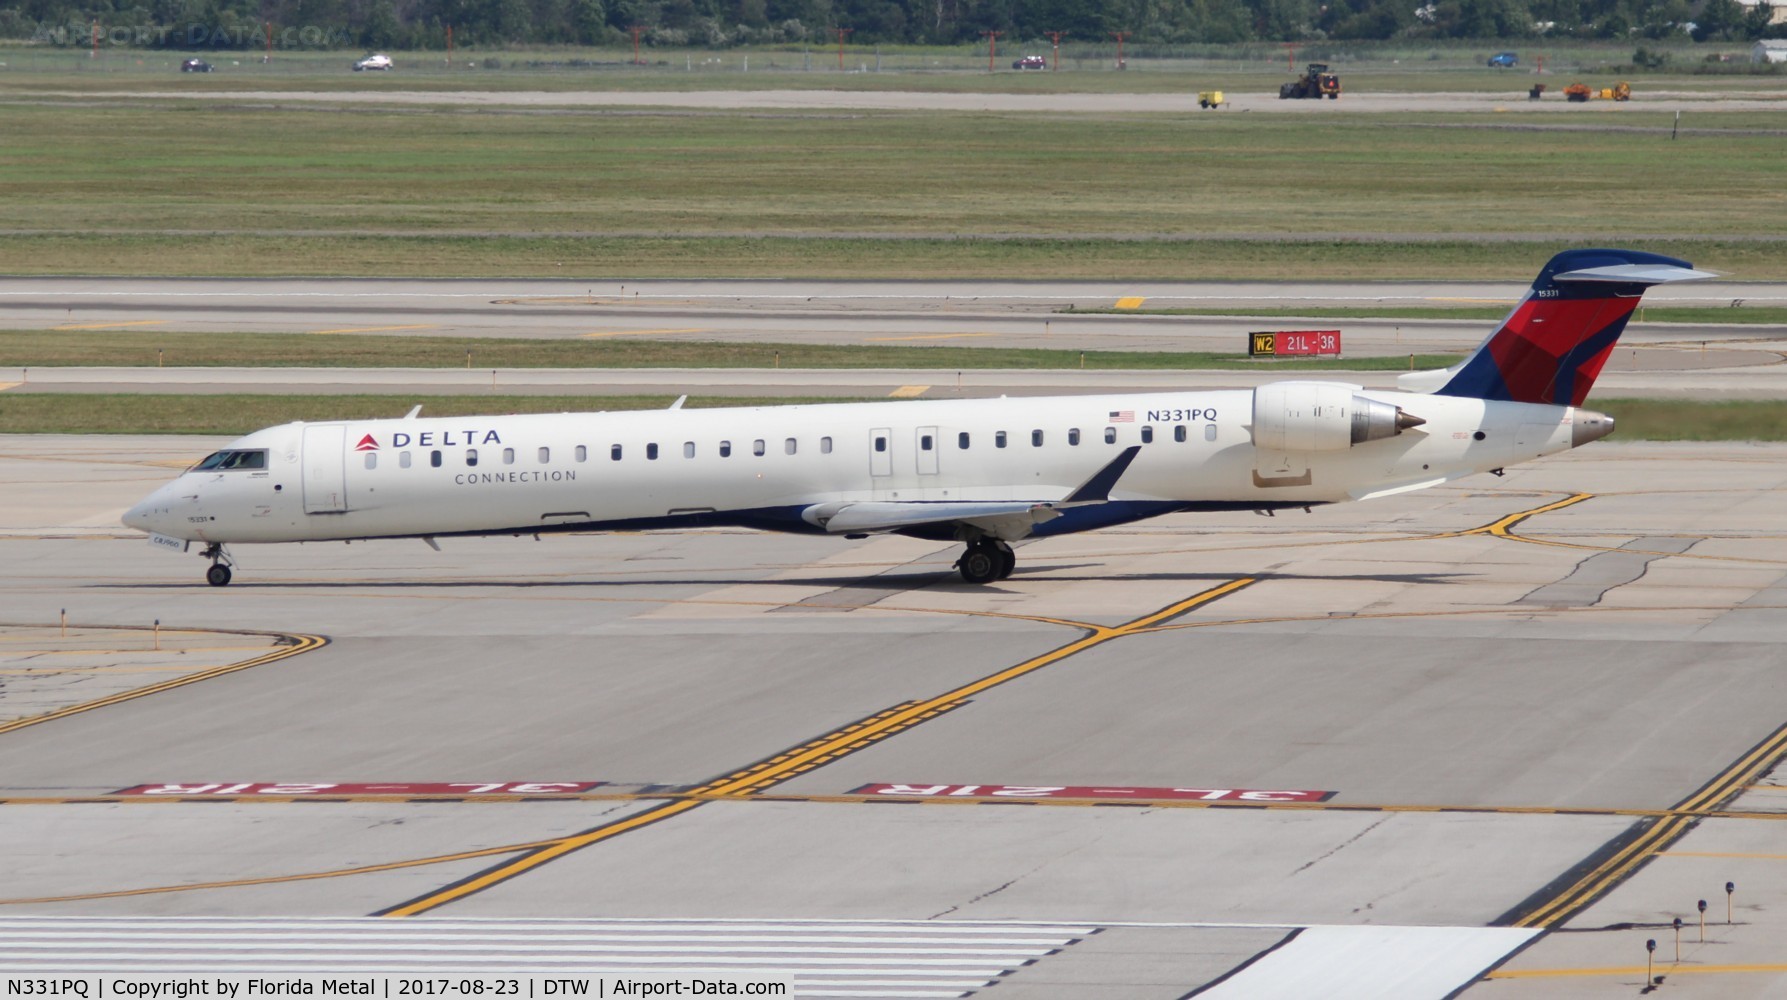 N331PQ, 2014 Bombardier CRJ-900LR (CL-600-2D24) C/N 15331, Delta Connection